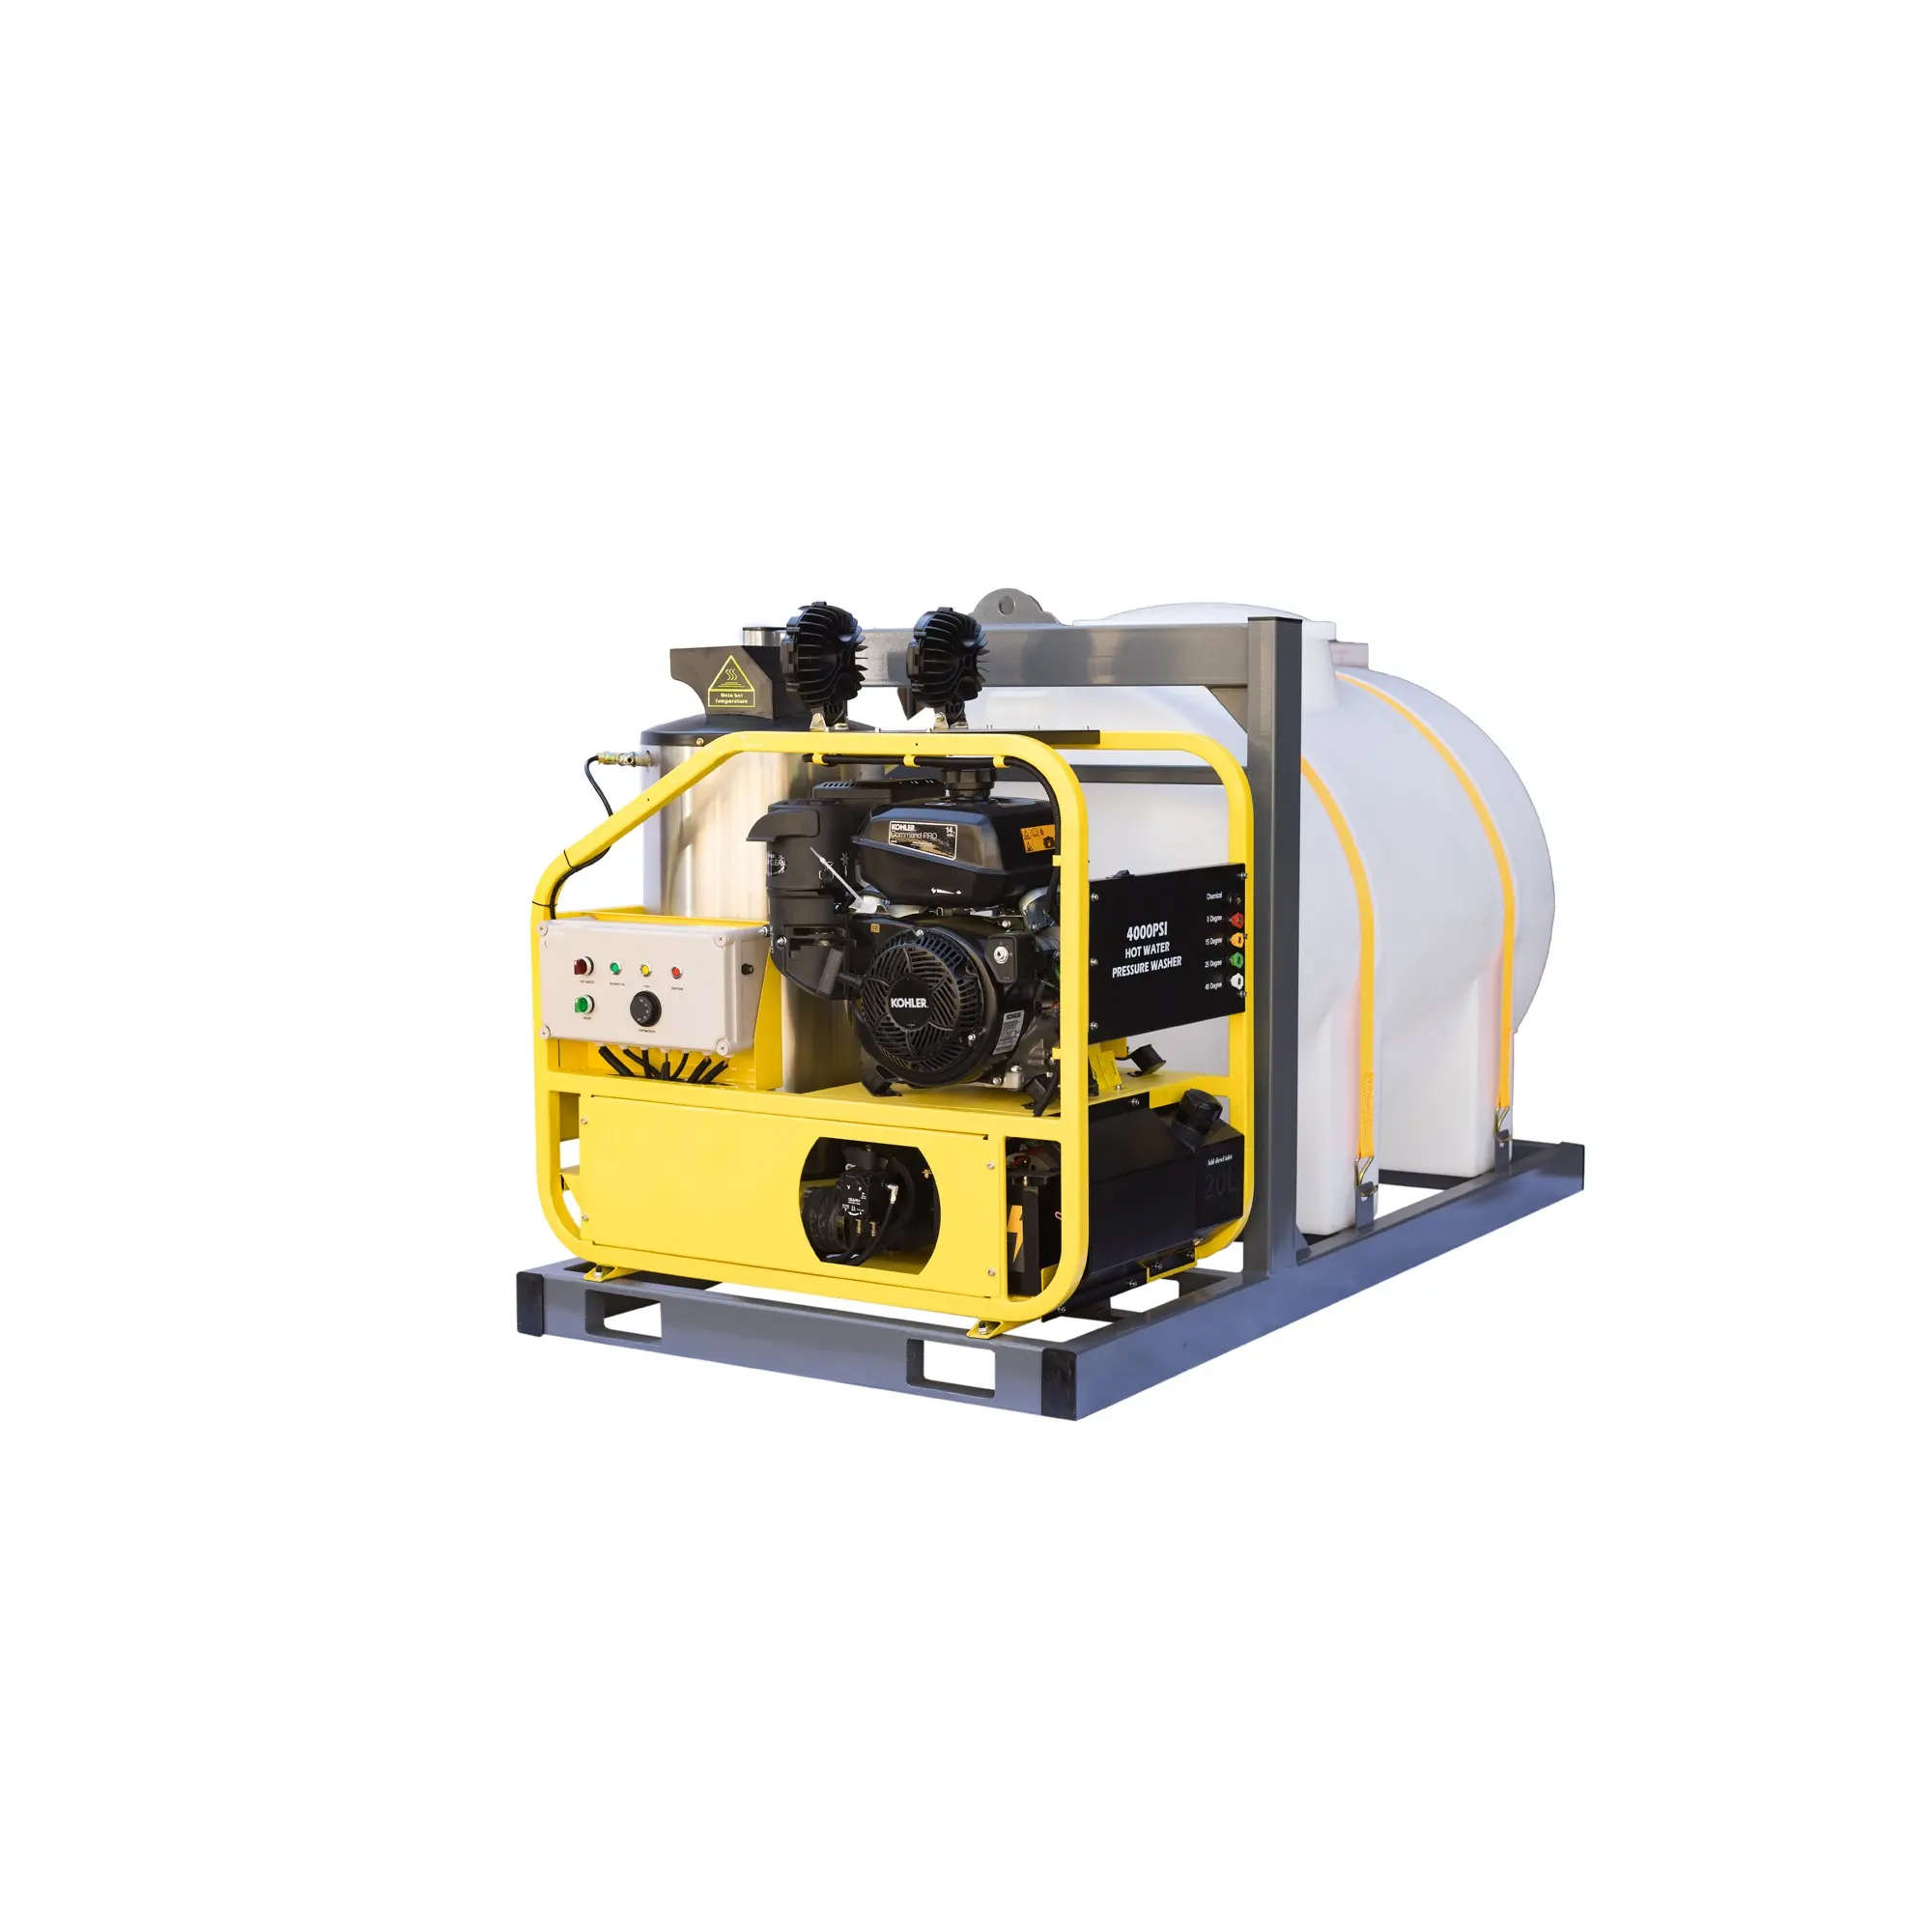 Heißwasser-Hochdruck reiniger 13 PS/250bar/4000psi Benzinmotor mit 850l Wassertank